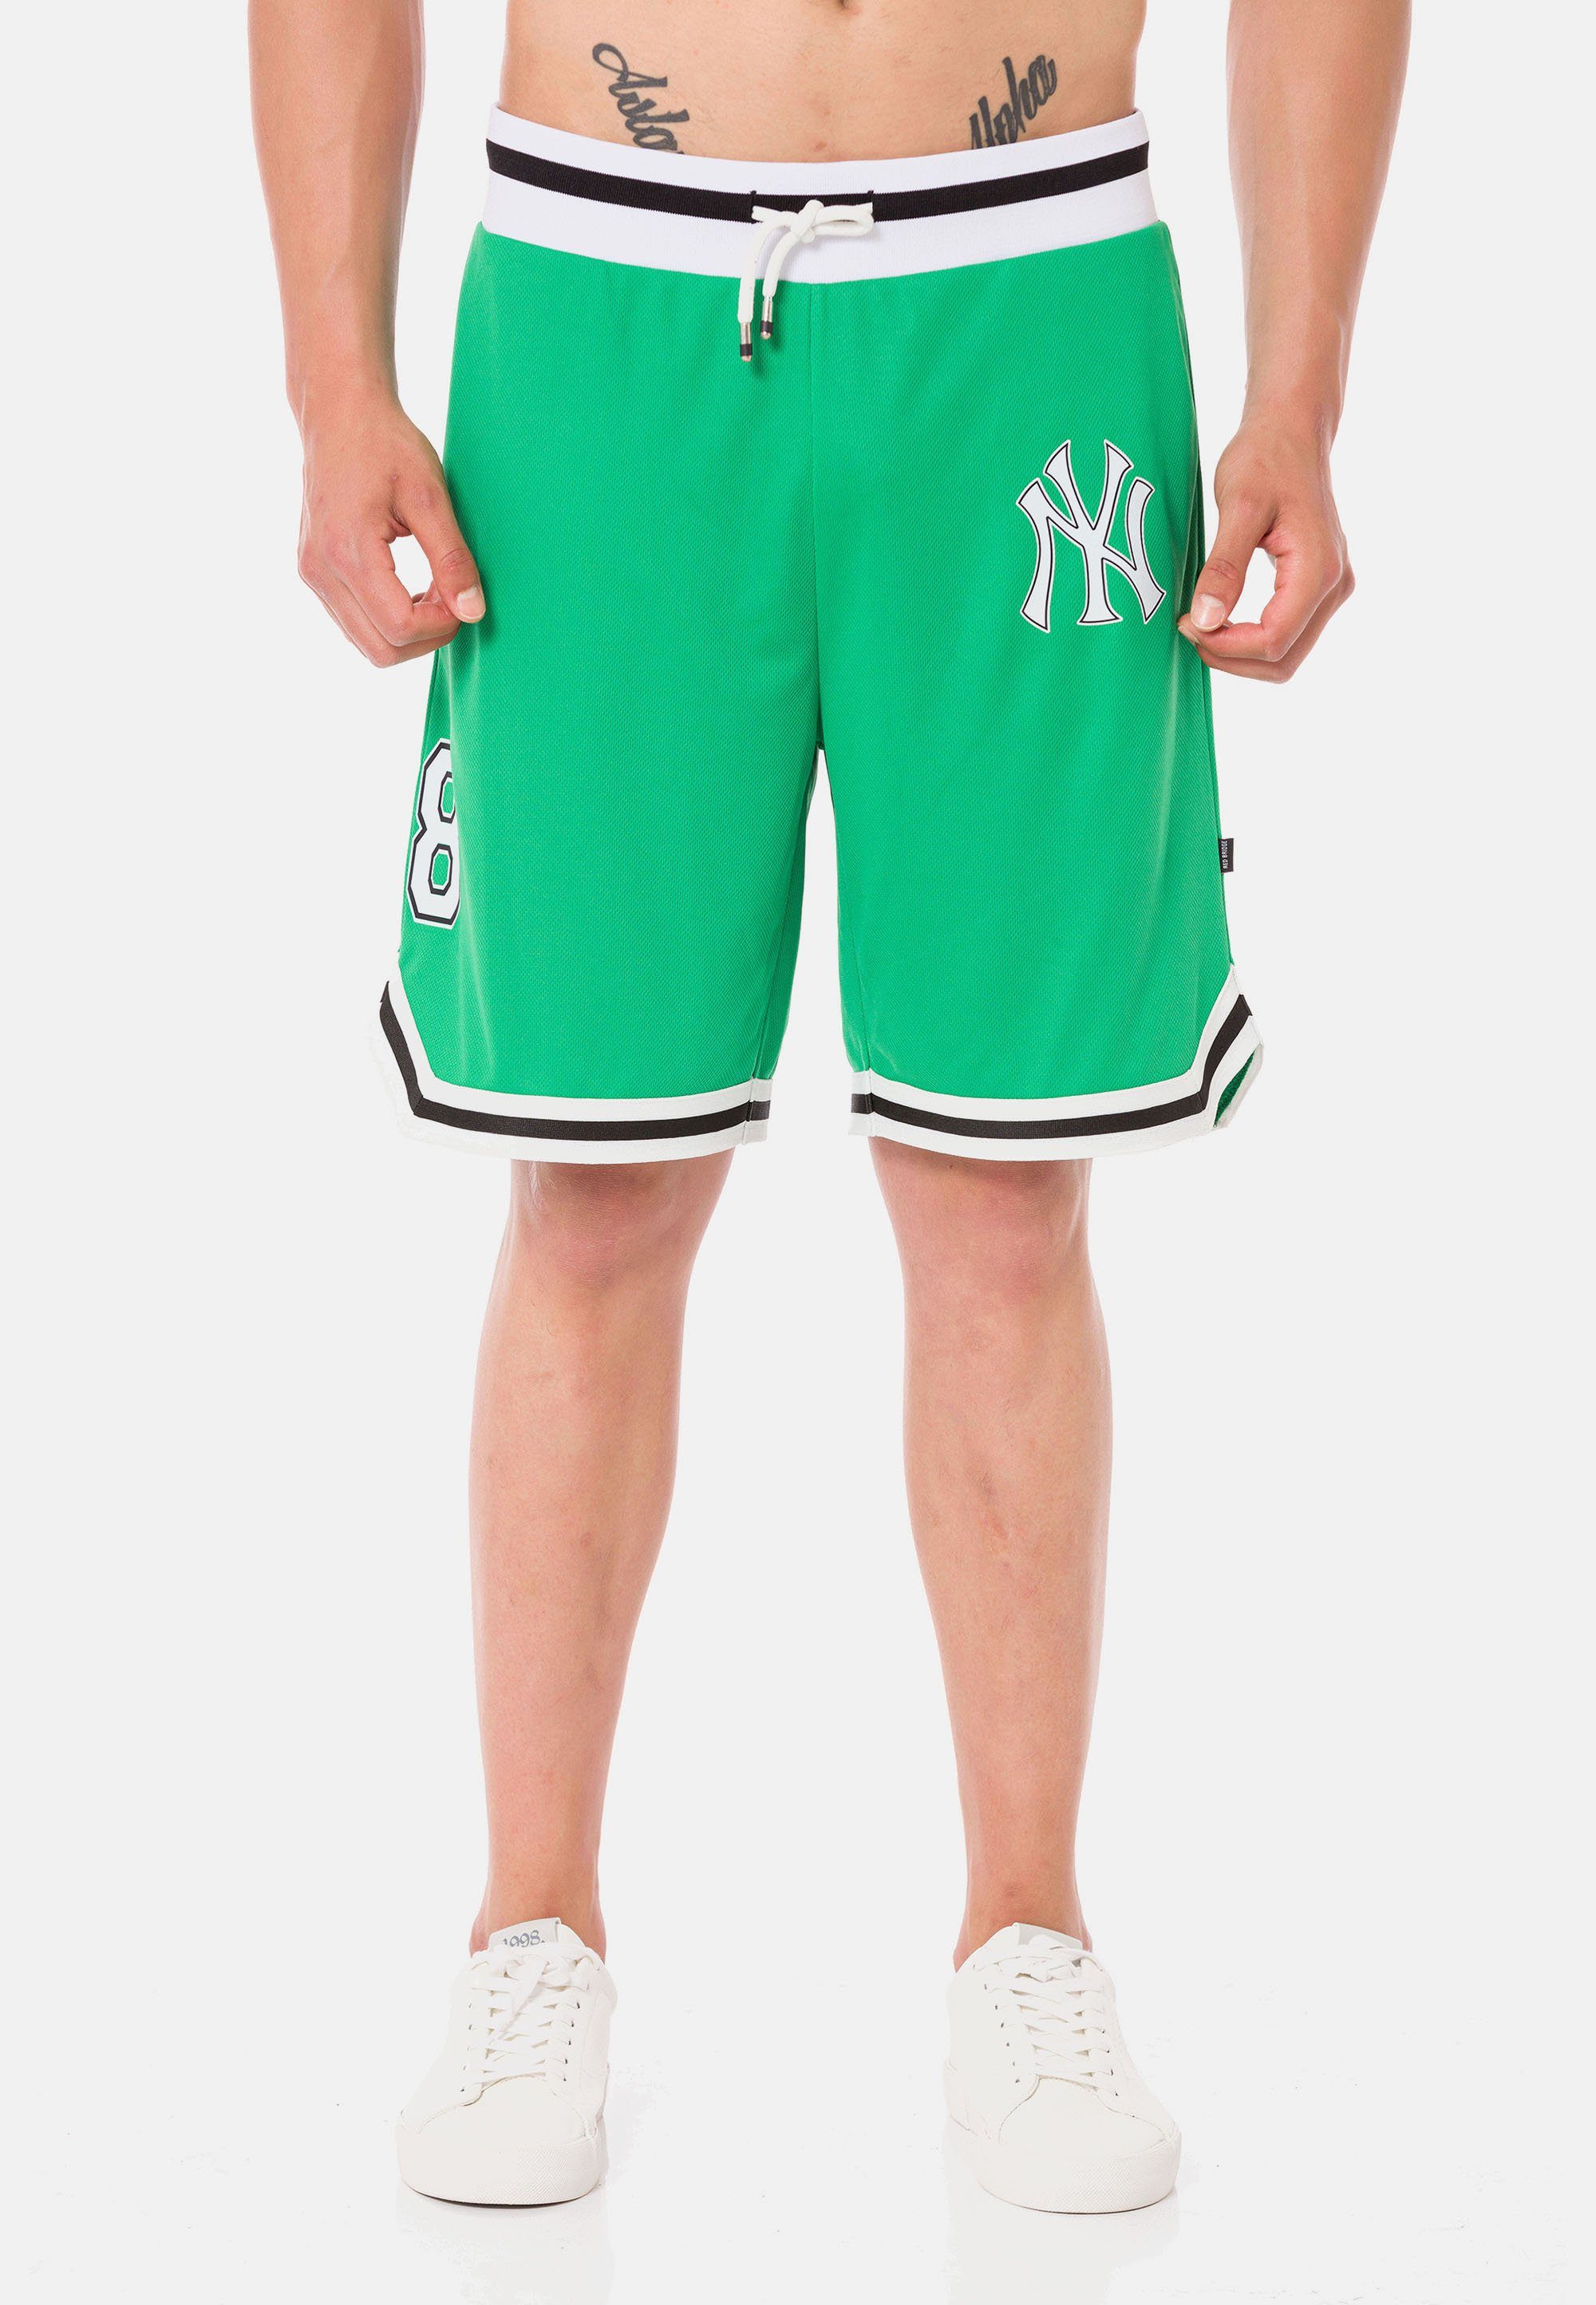 RedBridge Shorts Galeomaltande mit lässigen Kontraststreifen grün-weiß | Shorts